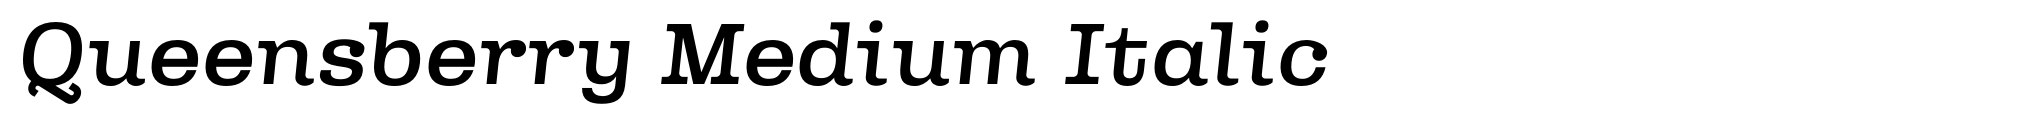 Queensberry Medium Italic image